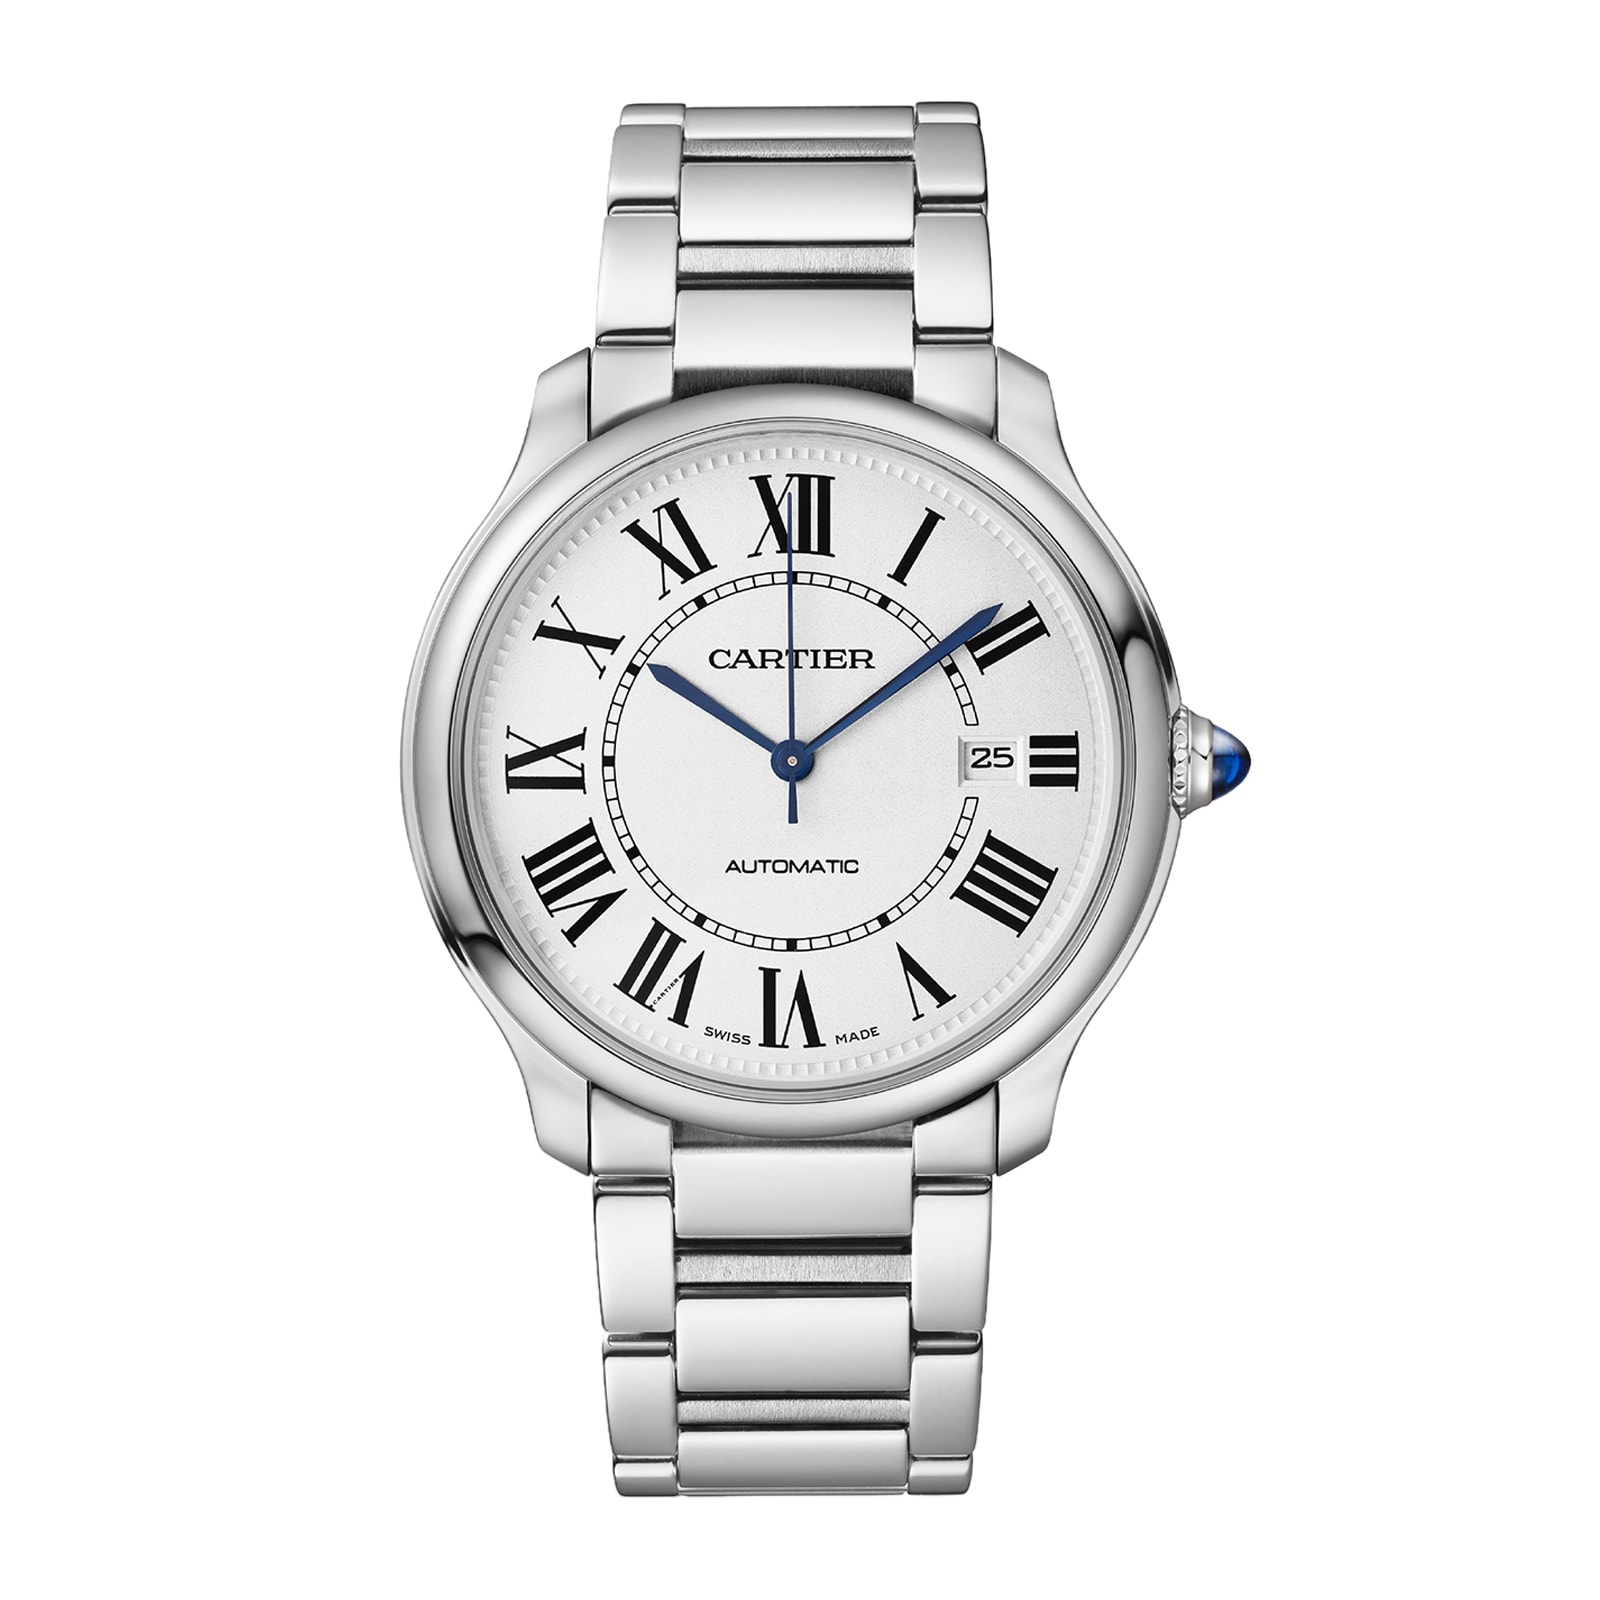 CRWSSA0039 - Santos de Cartier watch - Large model, automatic movement,  steel, ADLC, interchangeable rubber and leather bracelets - Cartier